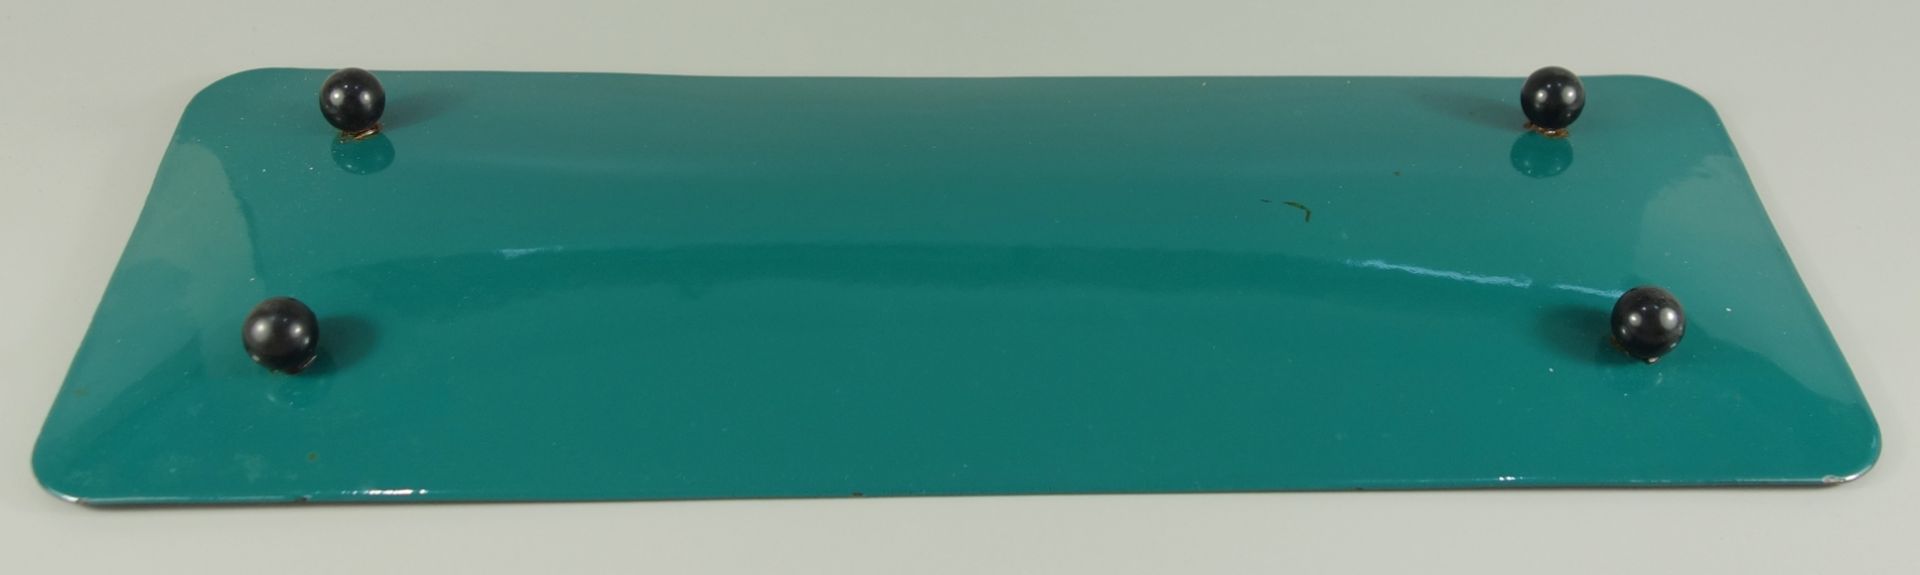 rechteckige Emaille-Schale, 1960er Jahre, leicht gemuldet, 4 Kugelfüße aus schwarzem Kunststoff, L* - Bild 3 aus 3